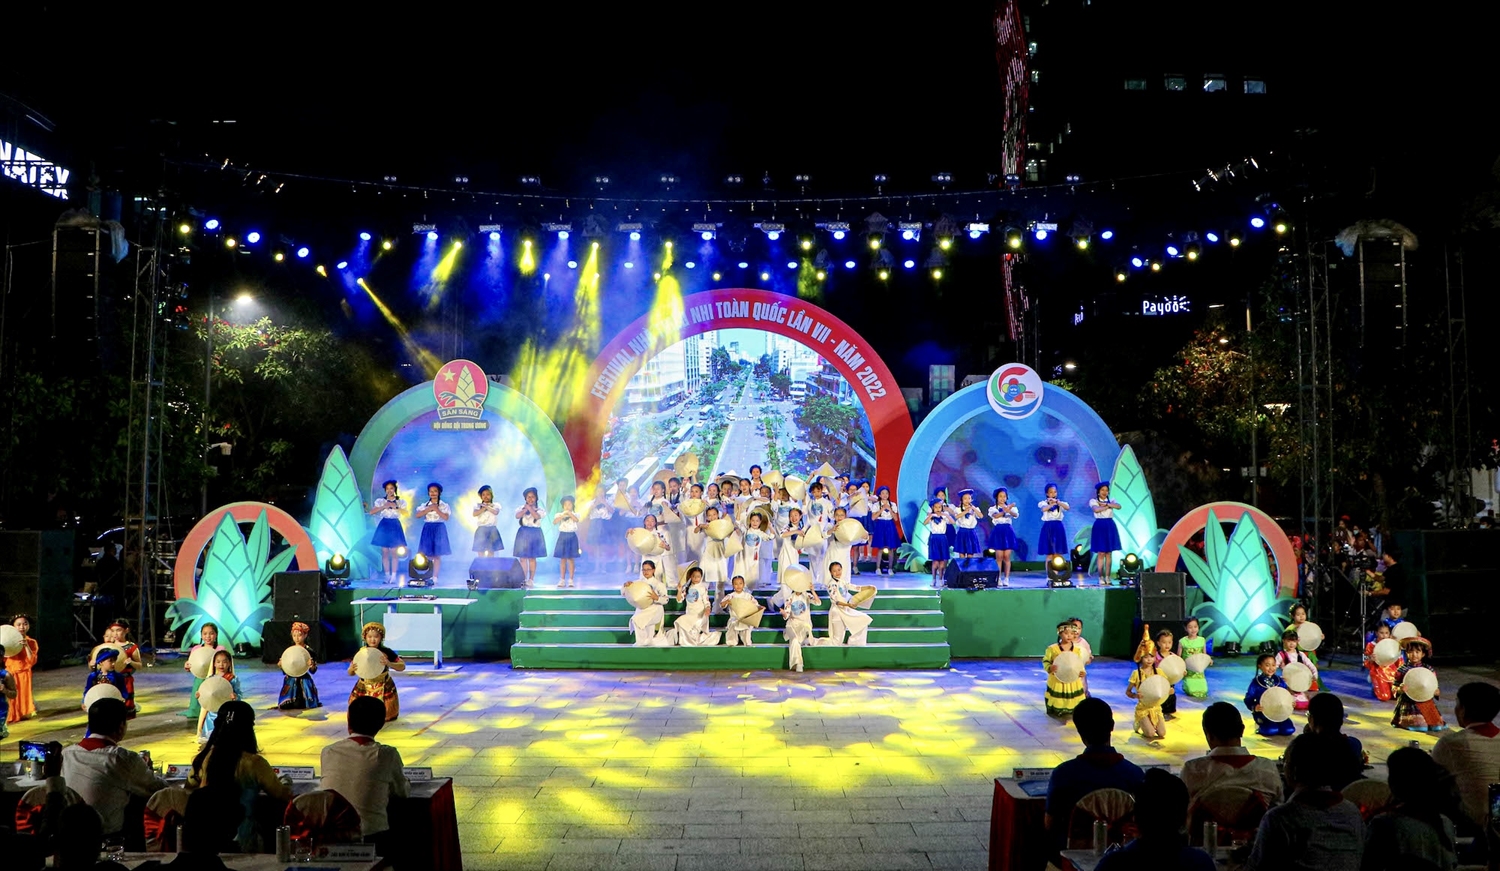 Lễ khai mạc Festival Nhà Thiếu nhi toàn quốc lần VII - 2022 diễn ra tại Quảng trường Phố đi bộ Nguyễn Huệ, TP. Hồ Chí Minh với đông đảo sự tham gia, theo dõi của mọi người dân